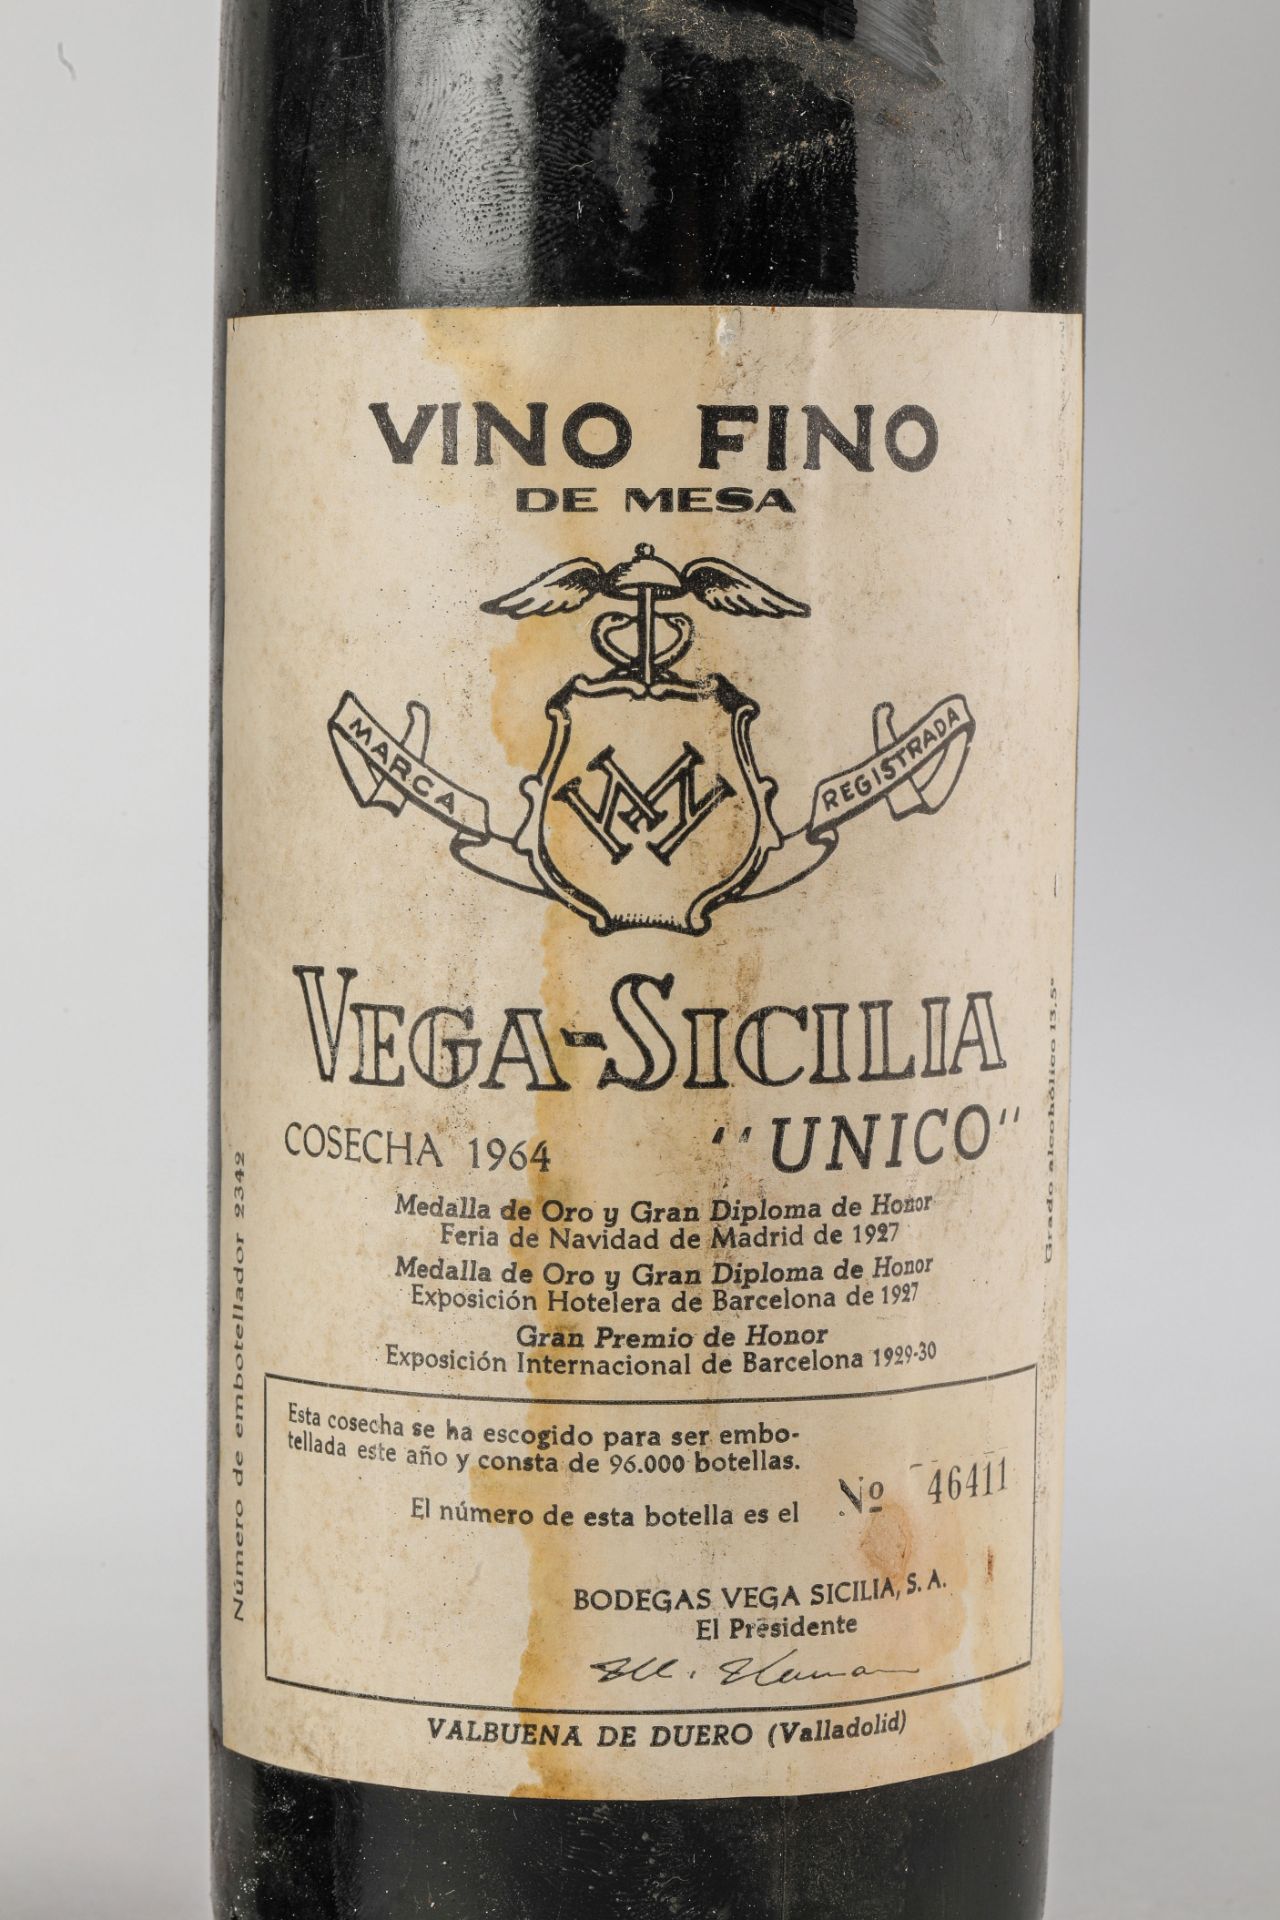 VEGA SICILIA UNICO. 1964. 2 Bouteilles N° 09928 et N°46411 sur production de 96 000 bouteilles. - Image 3 of 9